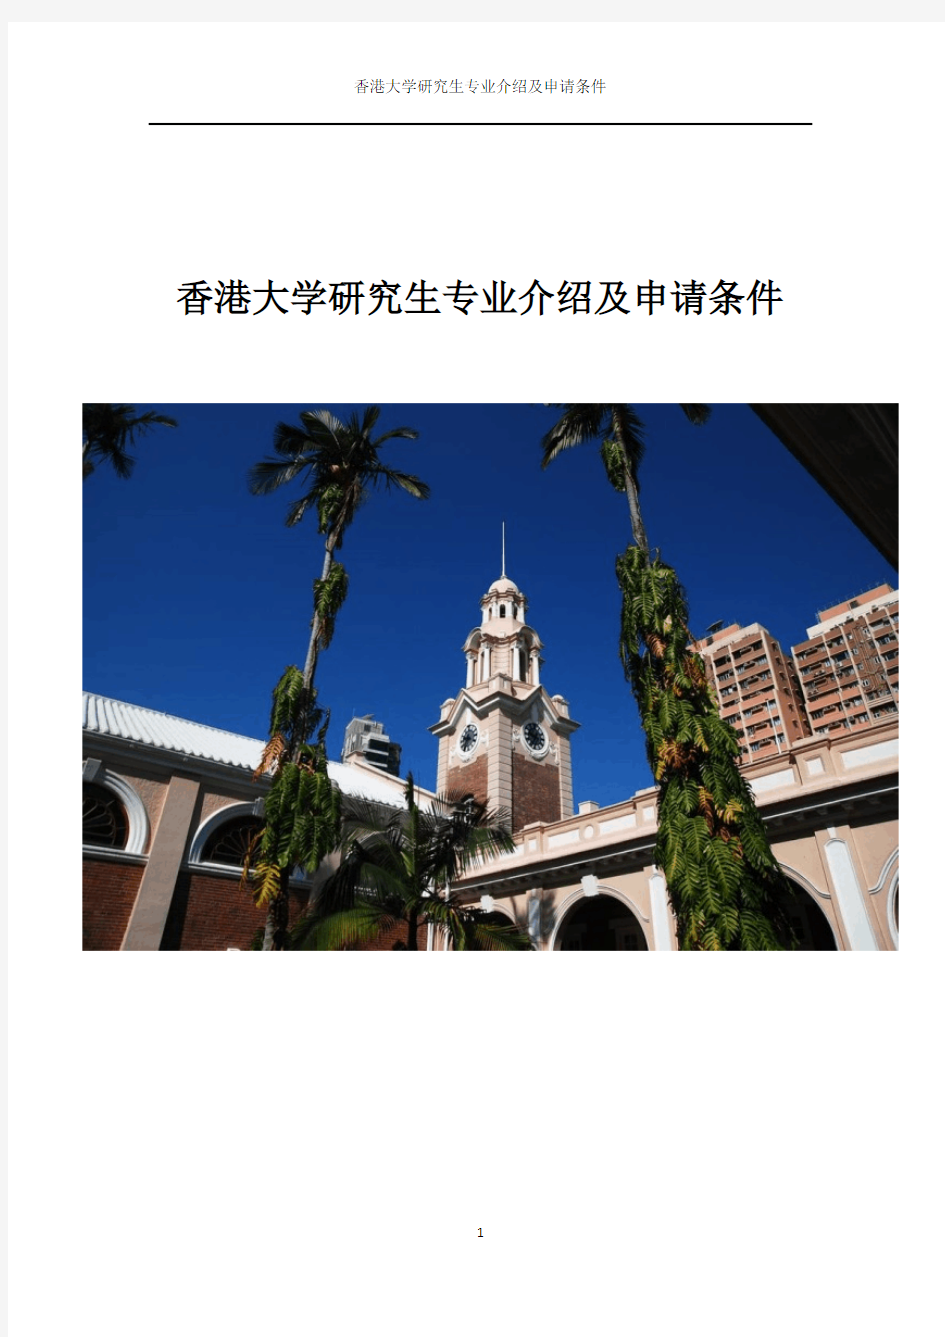 香港大学研究生专业介绍及申请条件